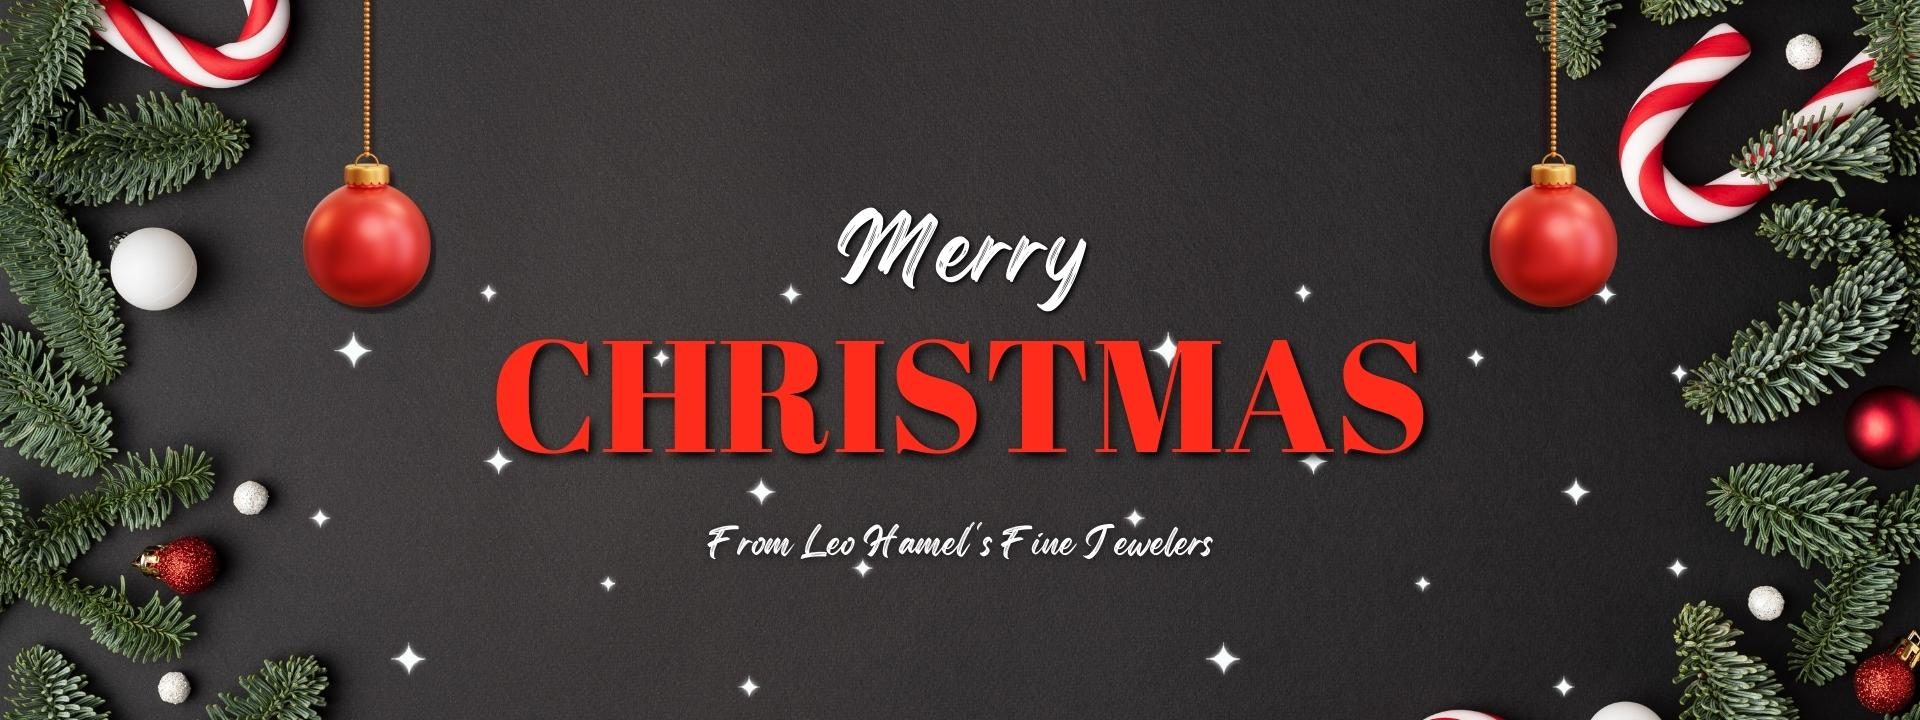 Merry Christmas from Leo Hamel's